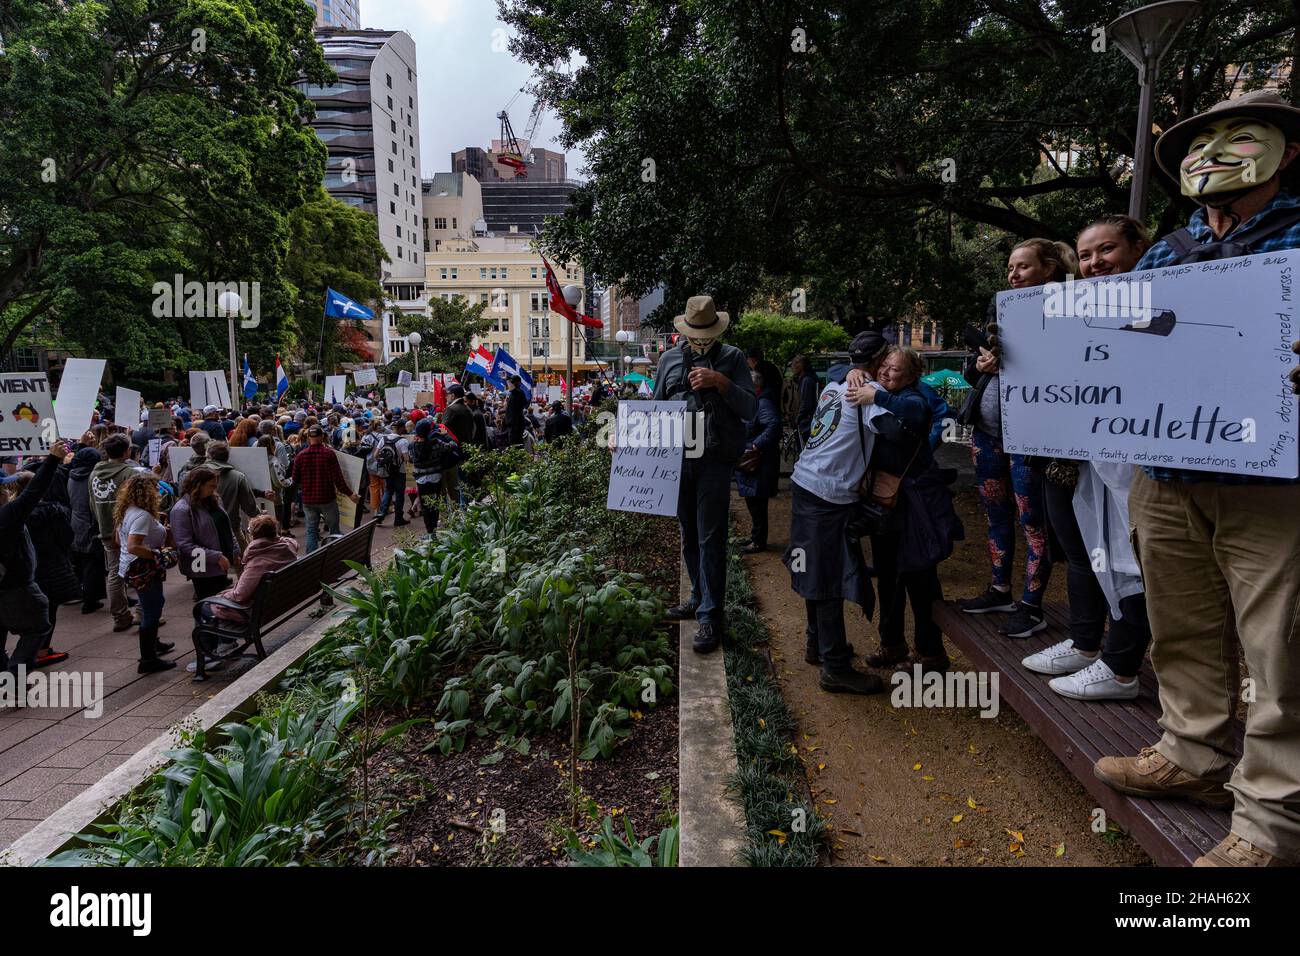 Menschen bei der Protestkundgebung, um sich gegen die obligatorische Impfpolitik der australischen Regierung zu wehren. Demonstration gegen Impfpass in Australien. Stockfoto